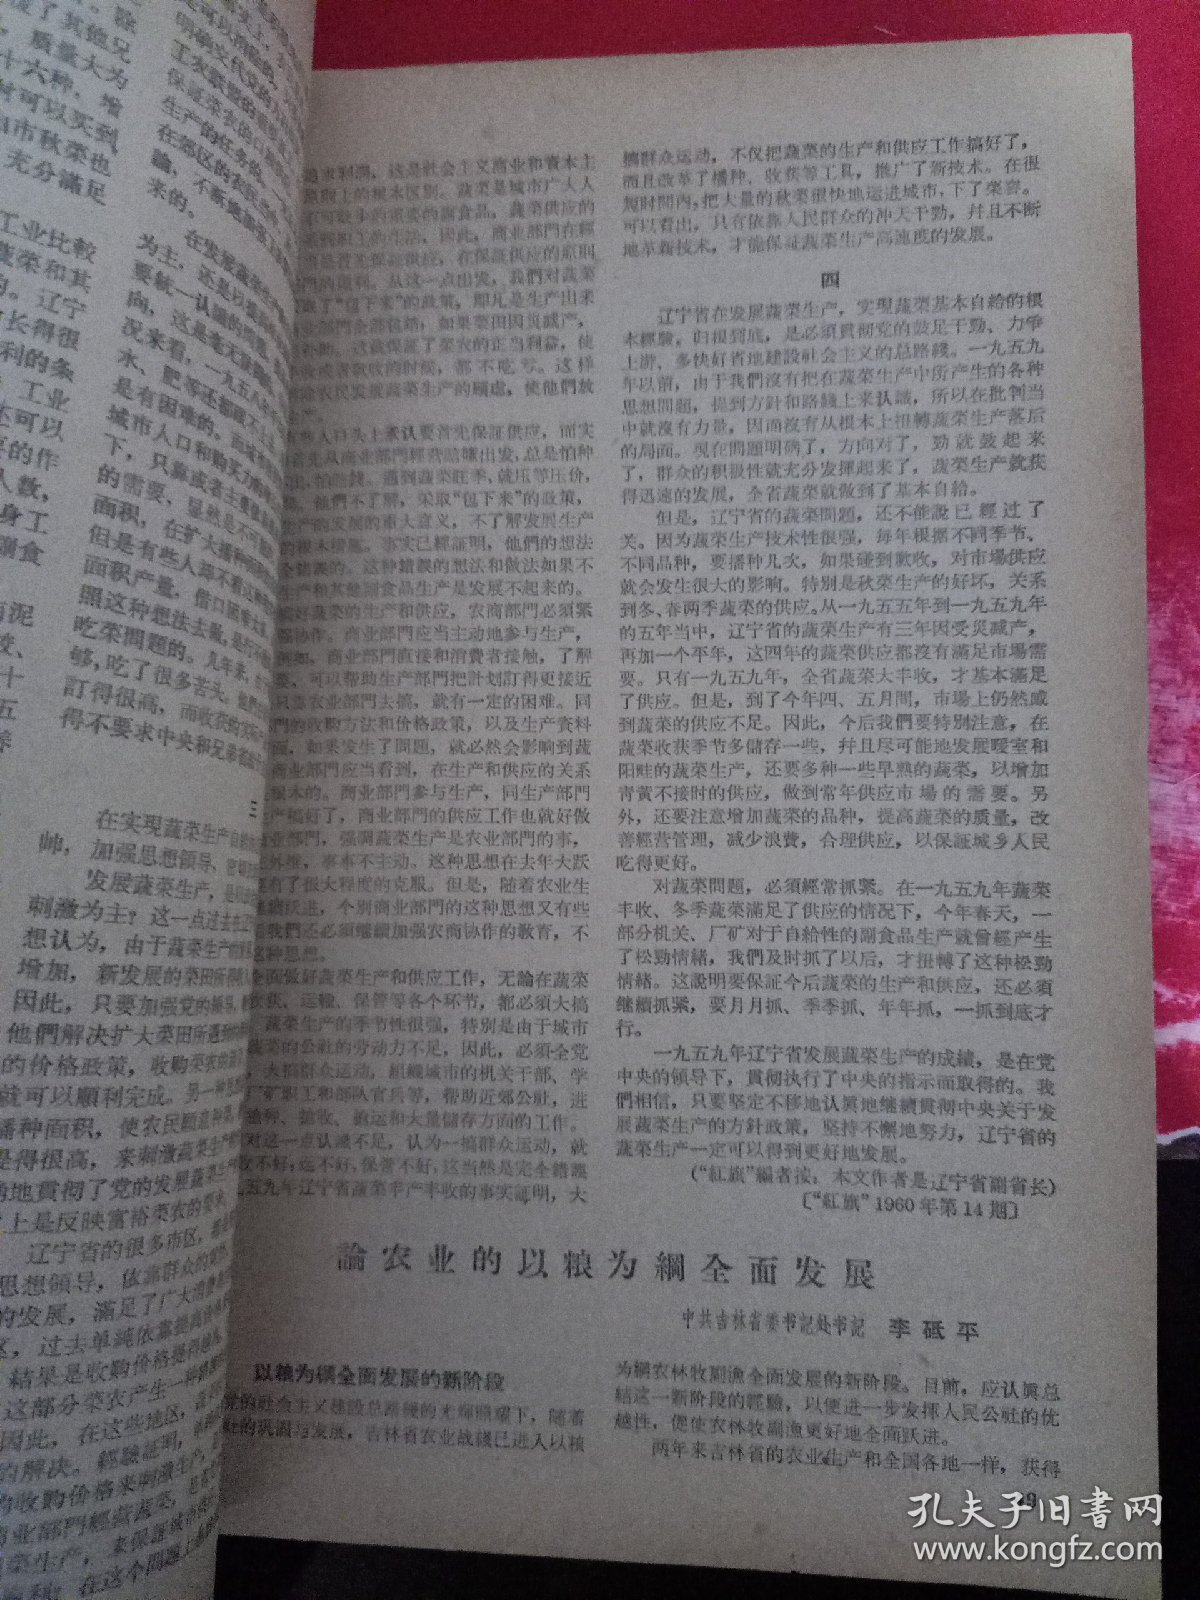 新华半月刊 1960/15